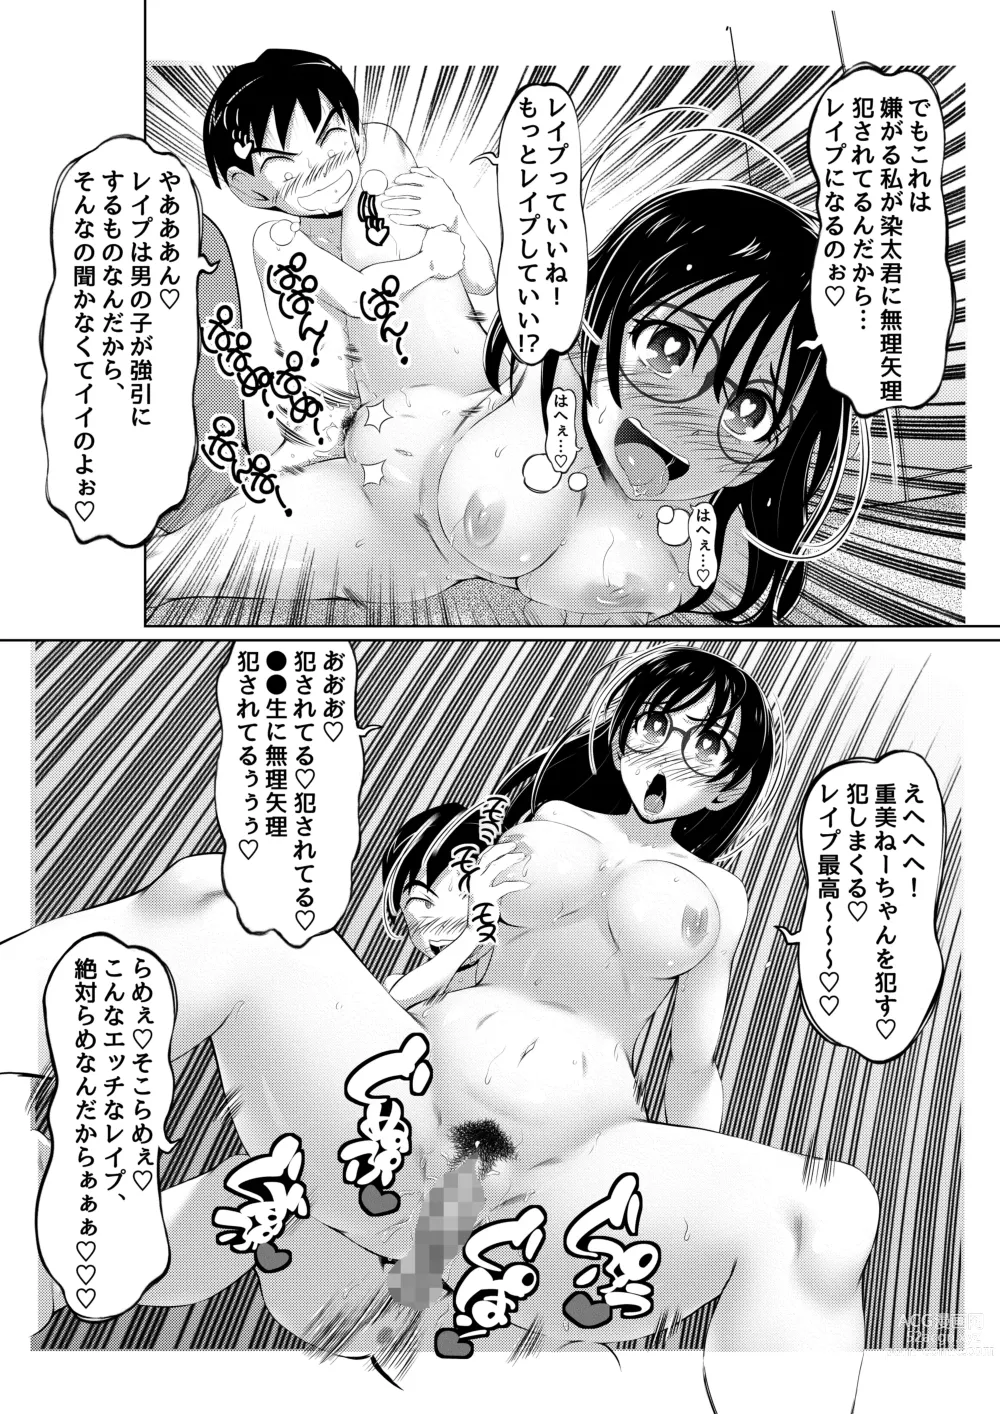 Page 33 of doujinshi Ecchi na Onna Mangakka Combi 2 Rensai Junbi wa Kitsui no da!